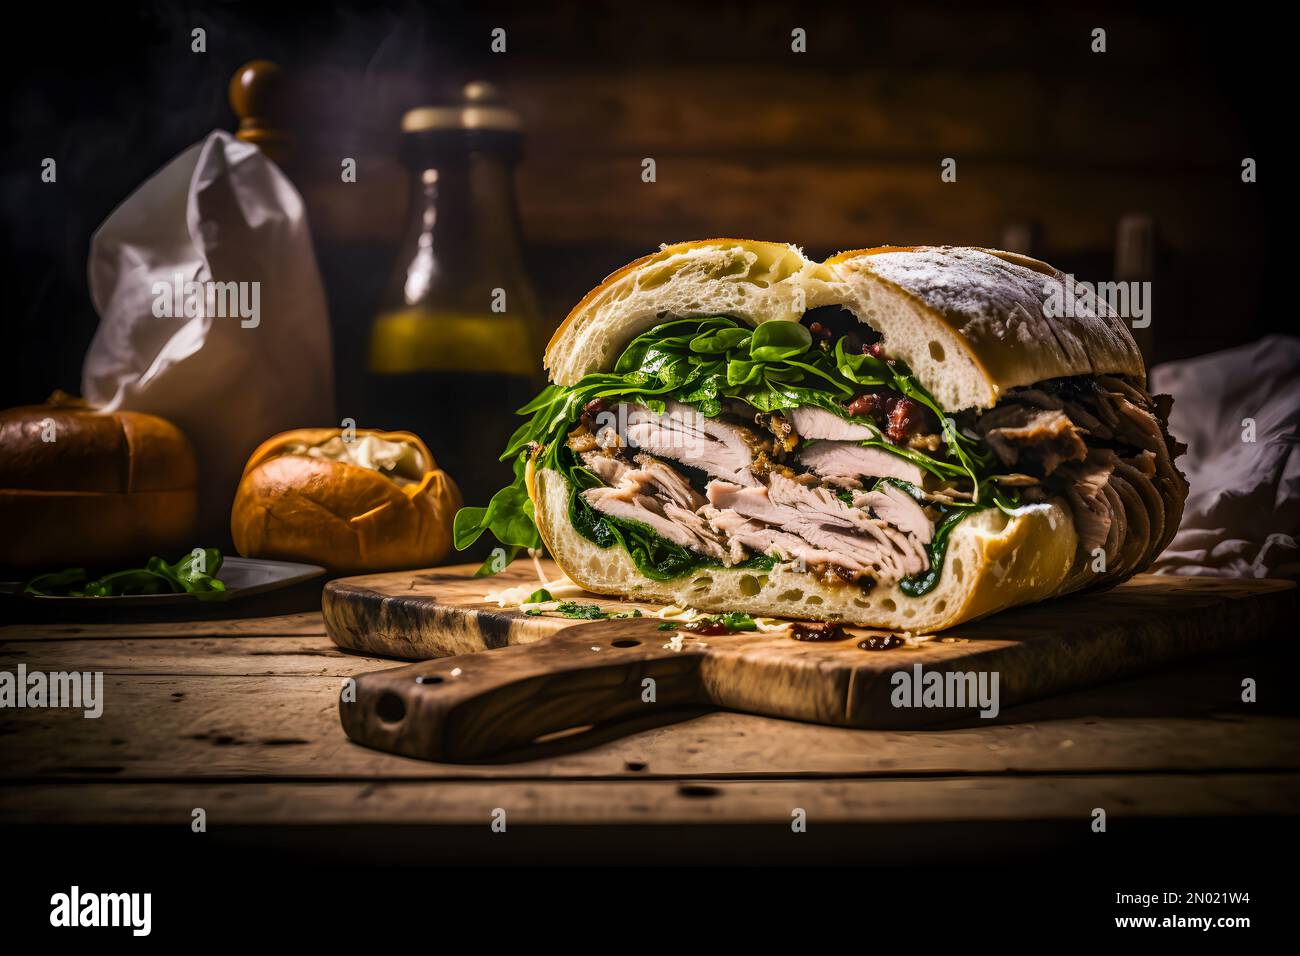 Festeggiate il gusto dell'Italia con il nostro panino alla Porchetta. Immagini di alta qualità che mostrano succulenti arrosti di maiale, croccanti crackling Foto Stock